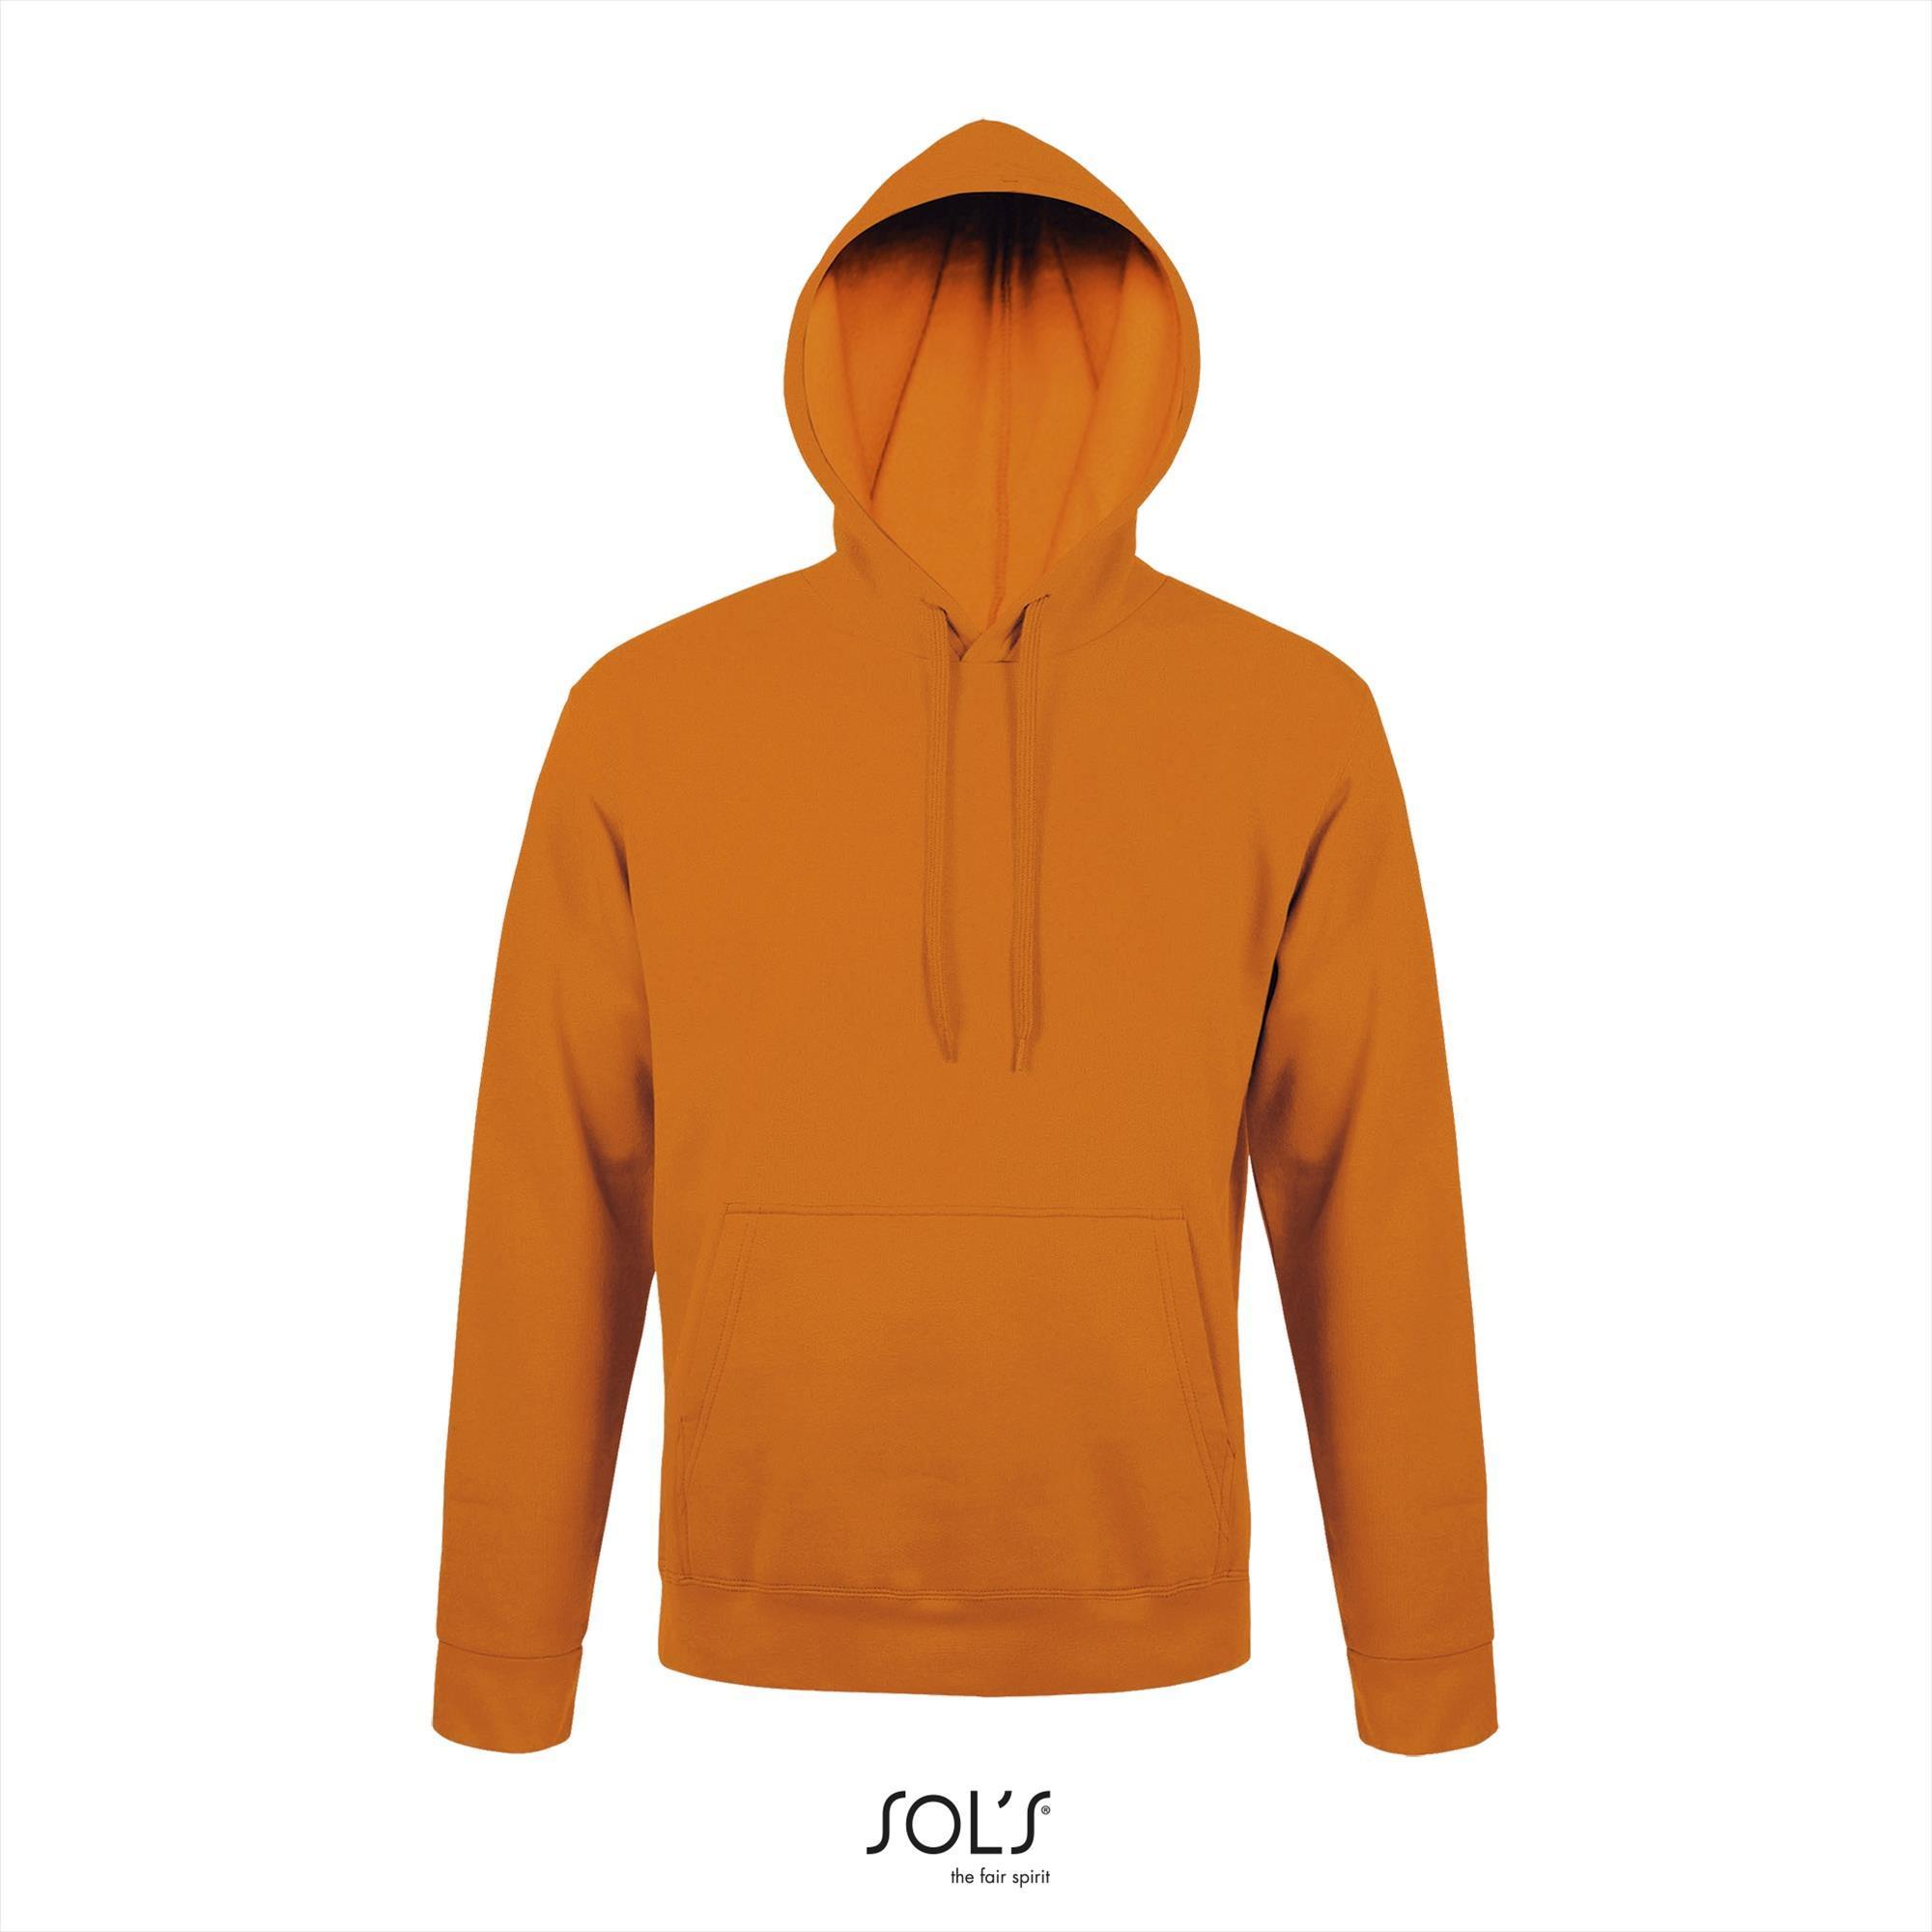 Oranje hooded sweater voor mannen unisex